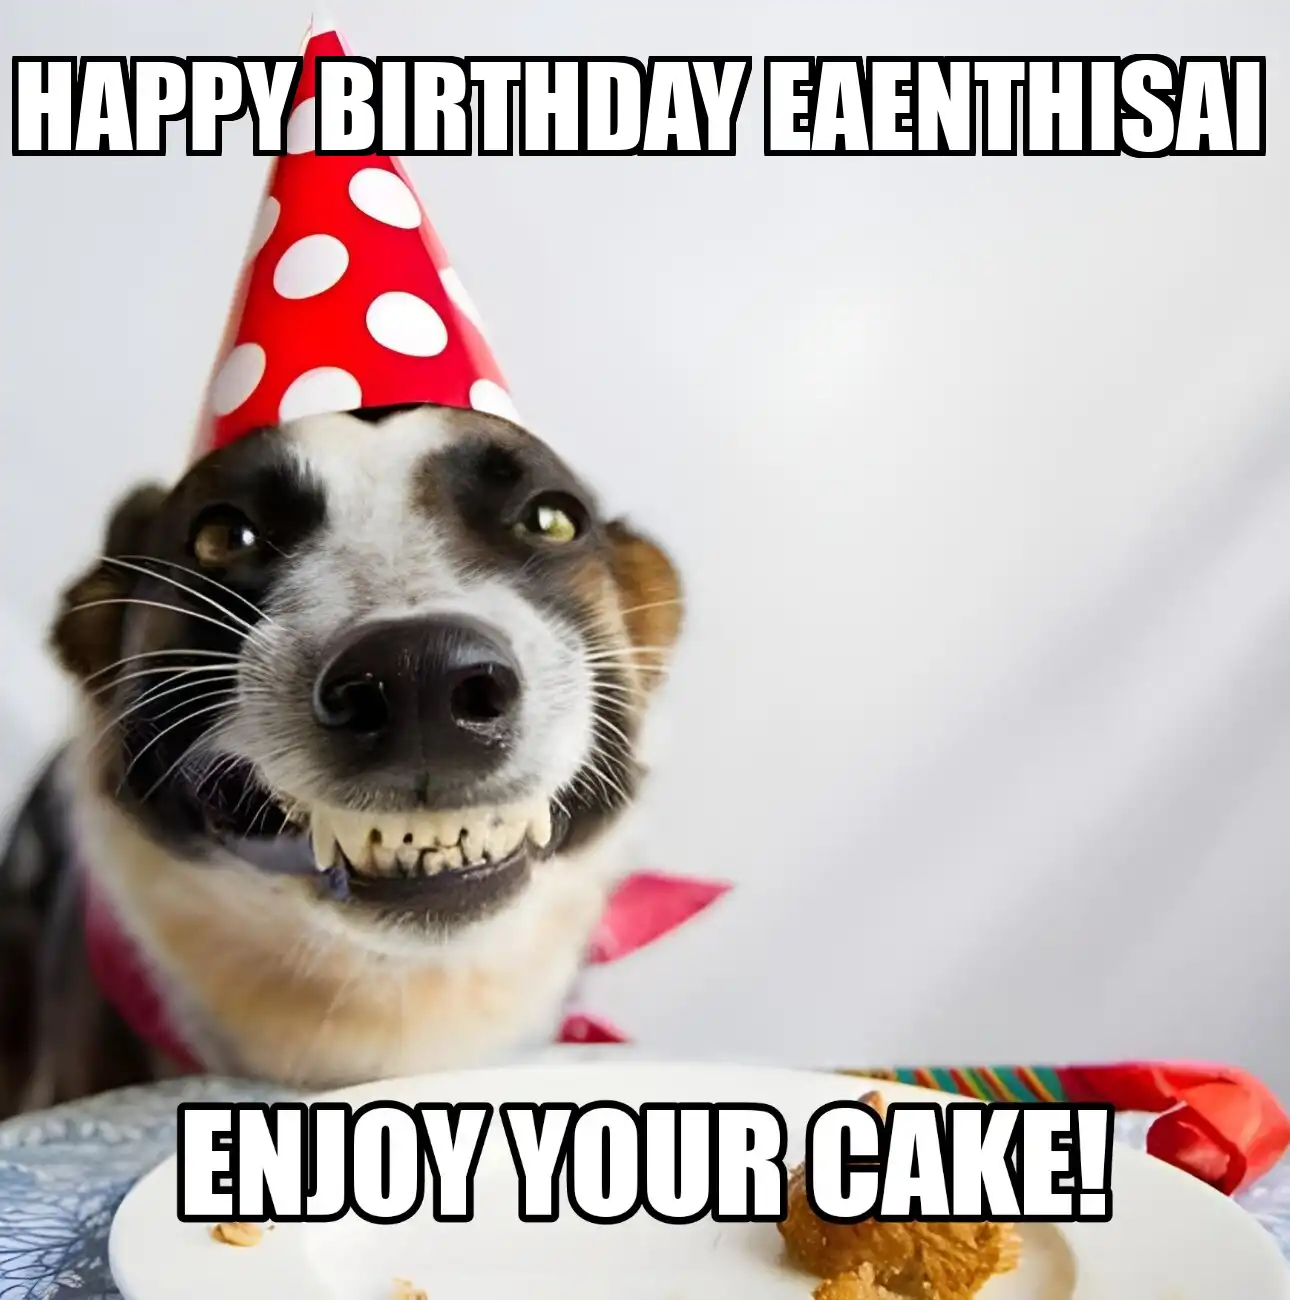 Happy Birthday Eaenthisai Enjoy Your Cake Dog Meme